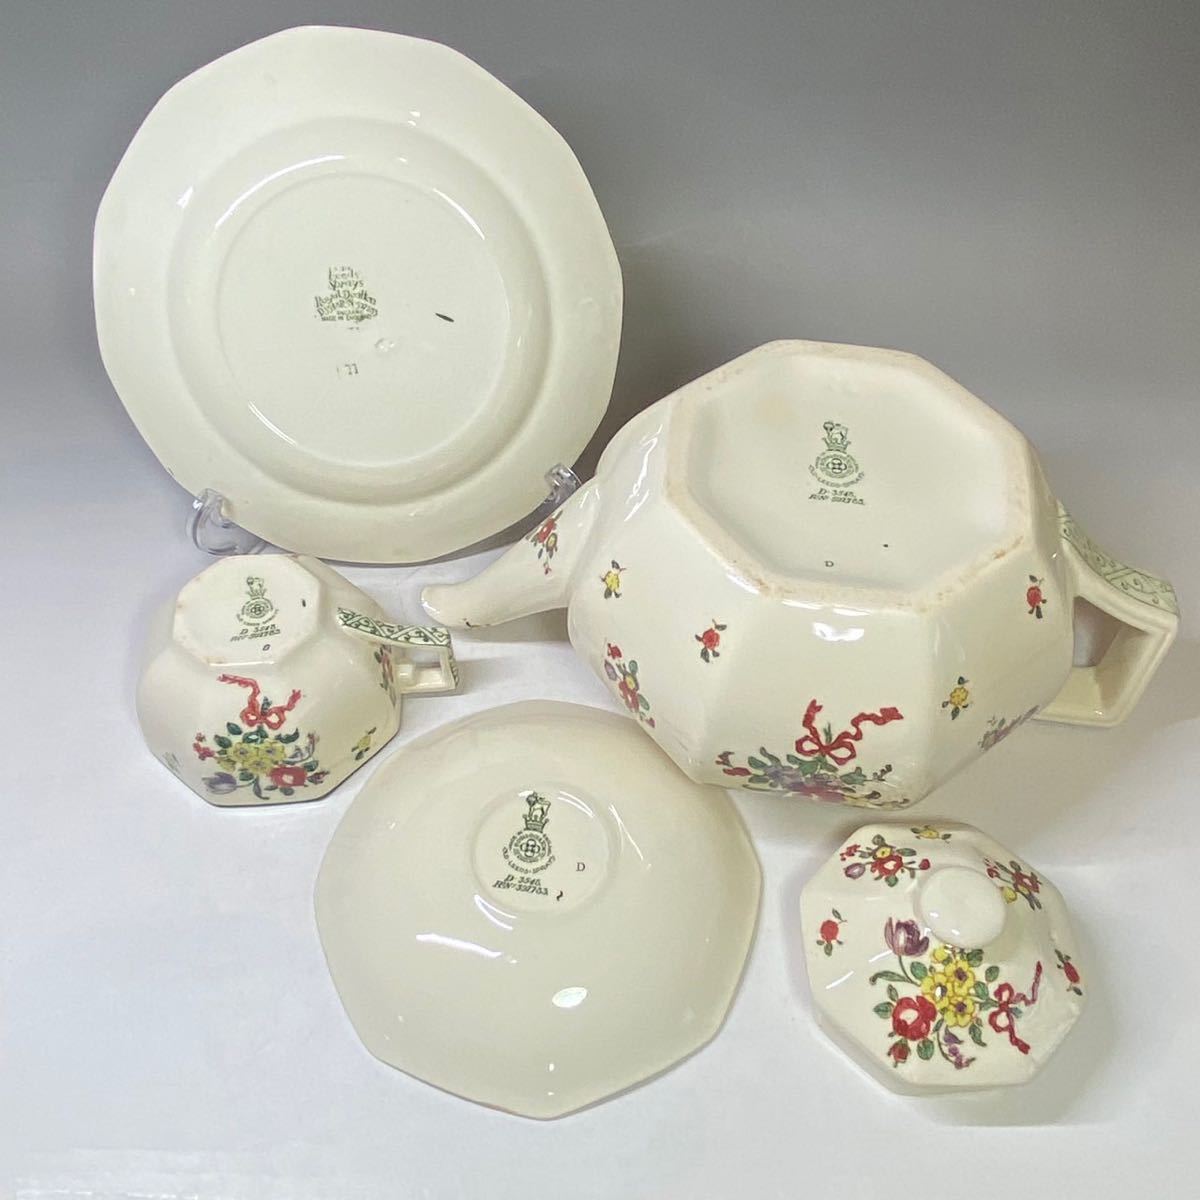  England antique Royal Doulton Britain teapot tea set cup & saucer cake plate flower bouquet 